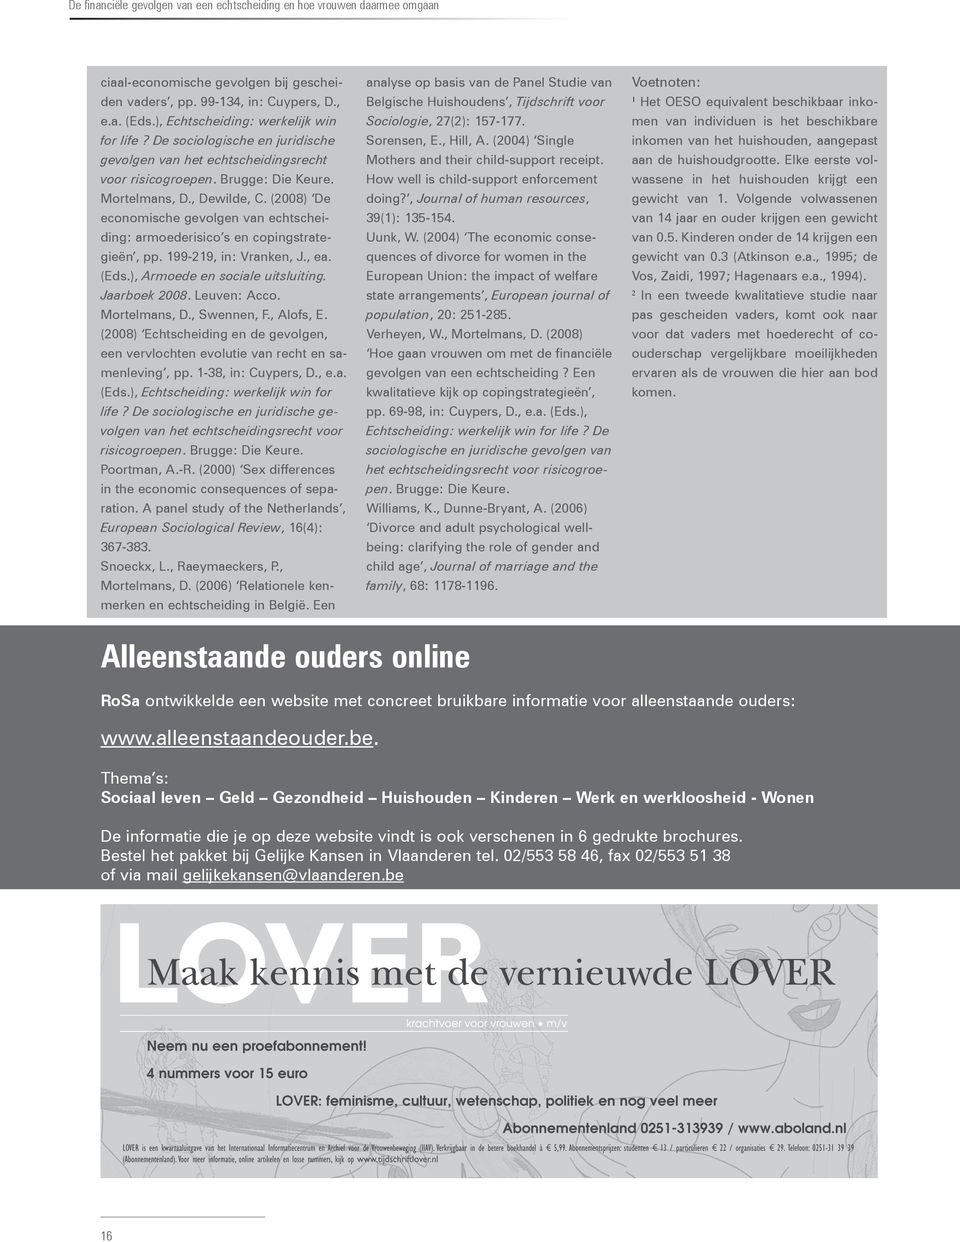 (2008) De economische gevolgen van echtscheiding: armoederisico s en copingstrategieën, pp. 199-219, in: Vranken, J., ea. (Eds.), Armoede en sociale uitsluiting. Jaarboek 2008. Leuven: Acco.